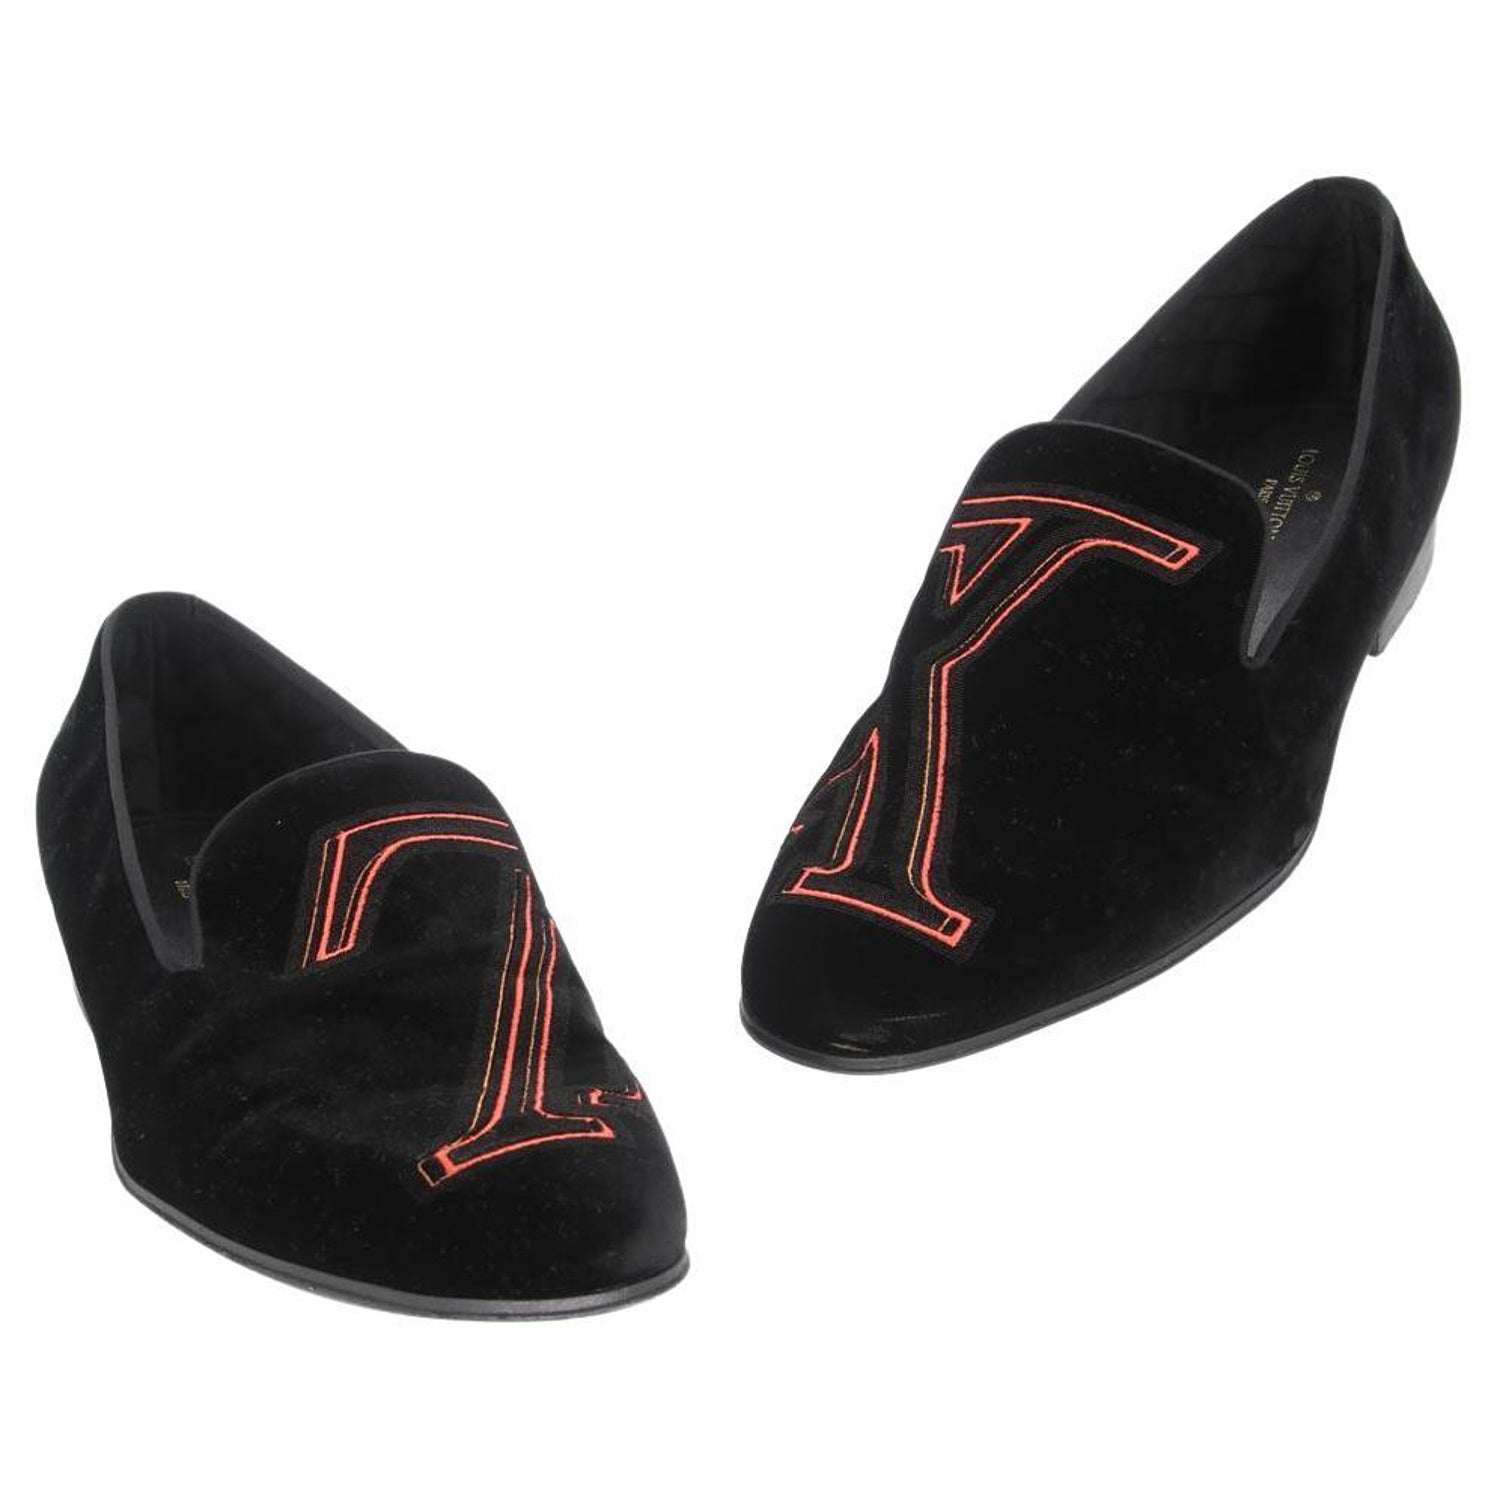 Louis Vuitton Monogram LV Slipper: flykickss.me  Lv slippers, Louis vuitton  monogram, Louis vuitton